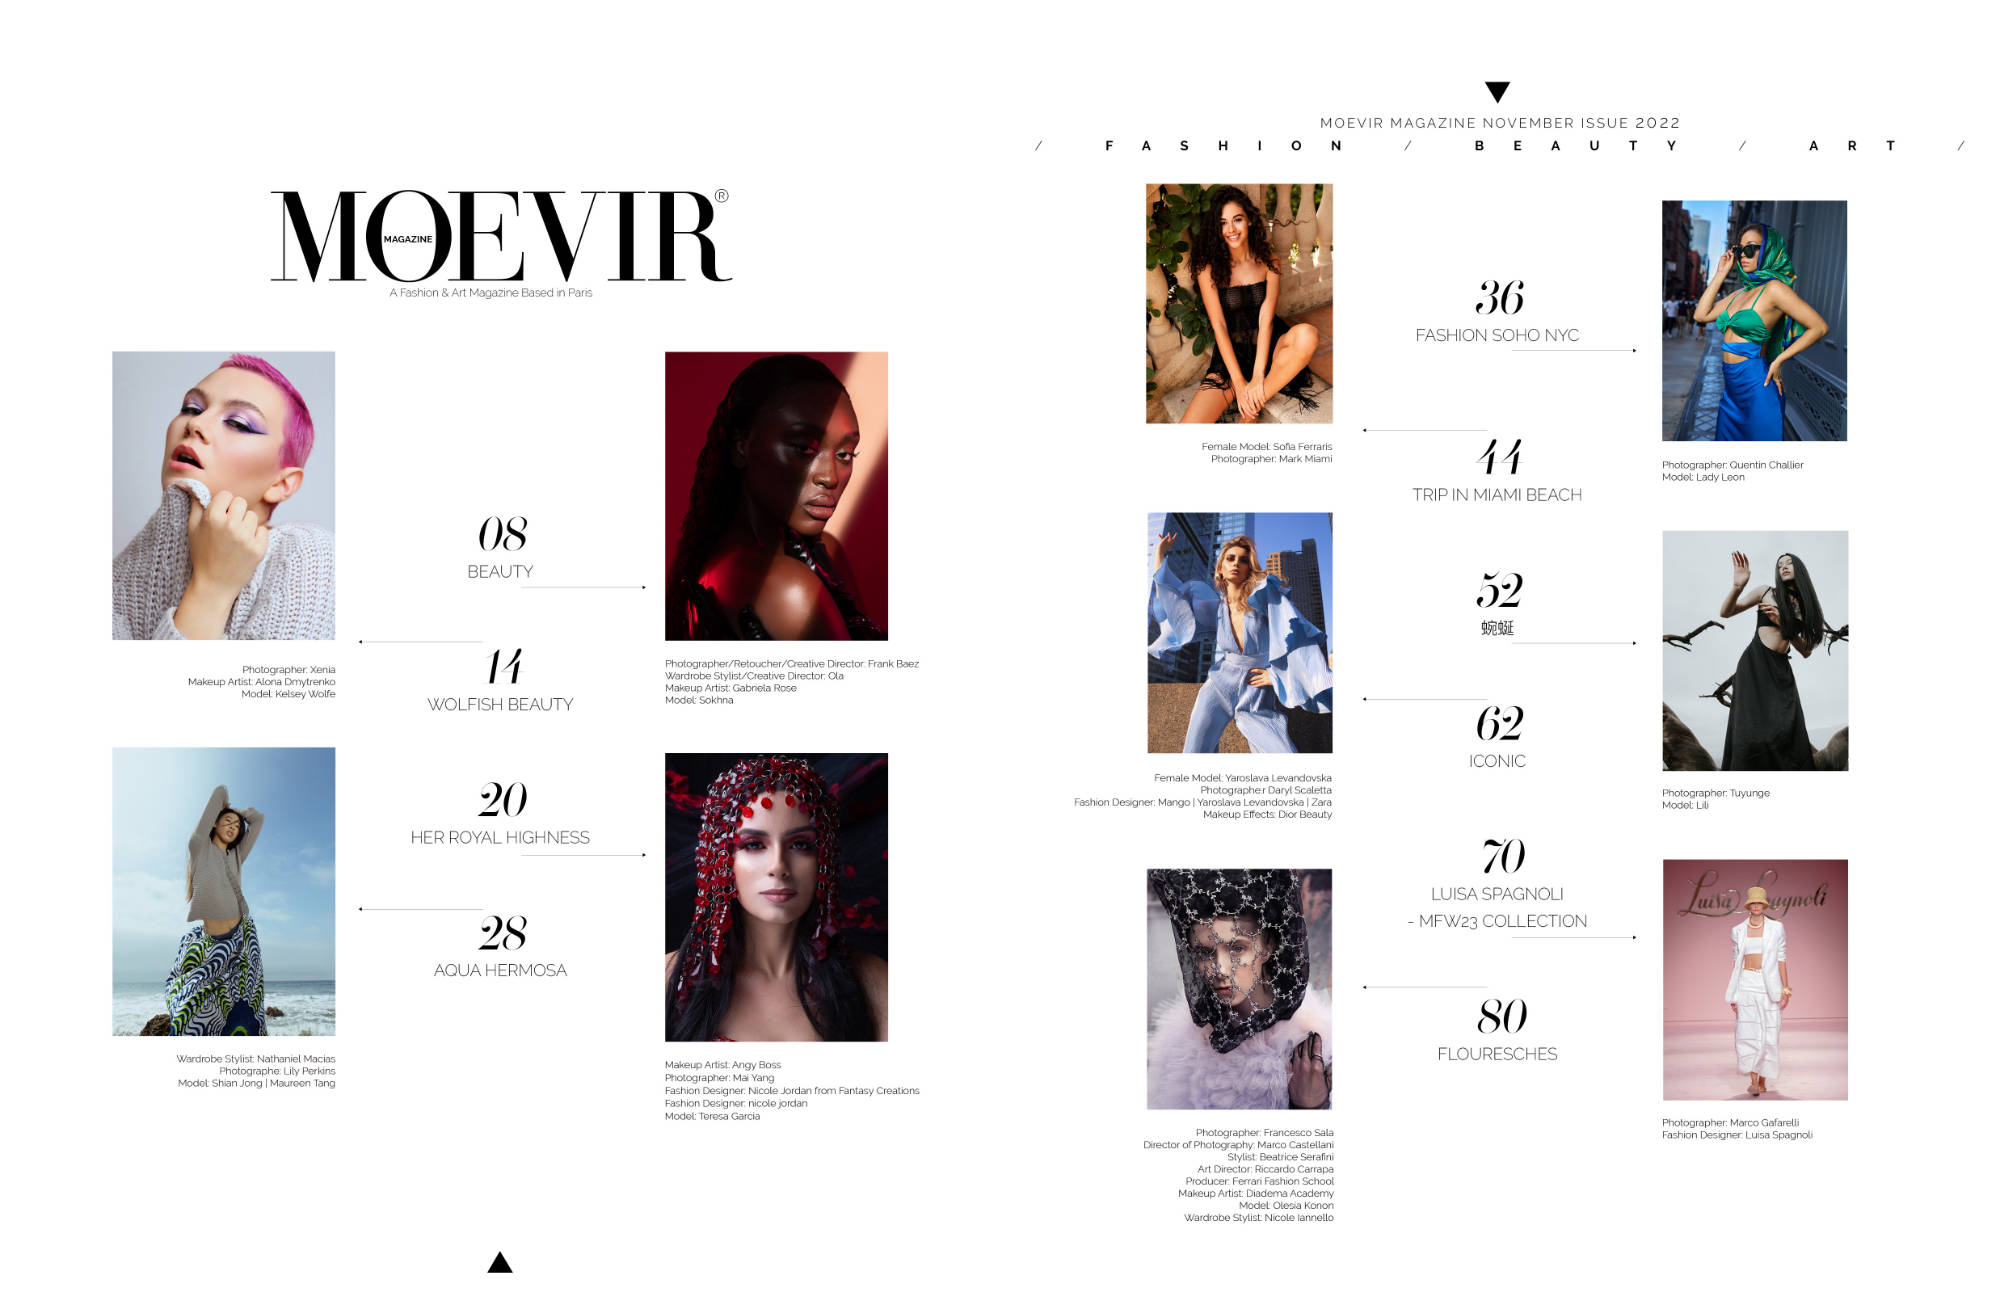 Wolfish beauty | Moevir Magazine - November Issue 2022